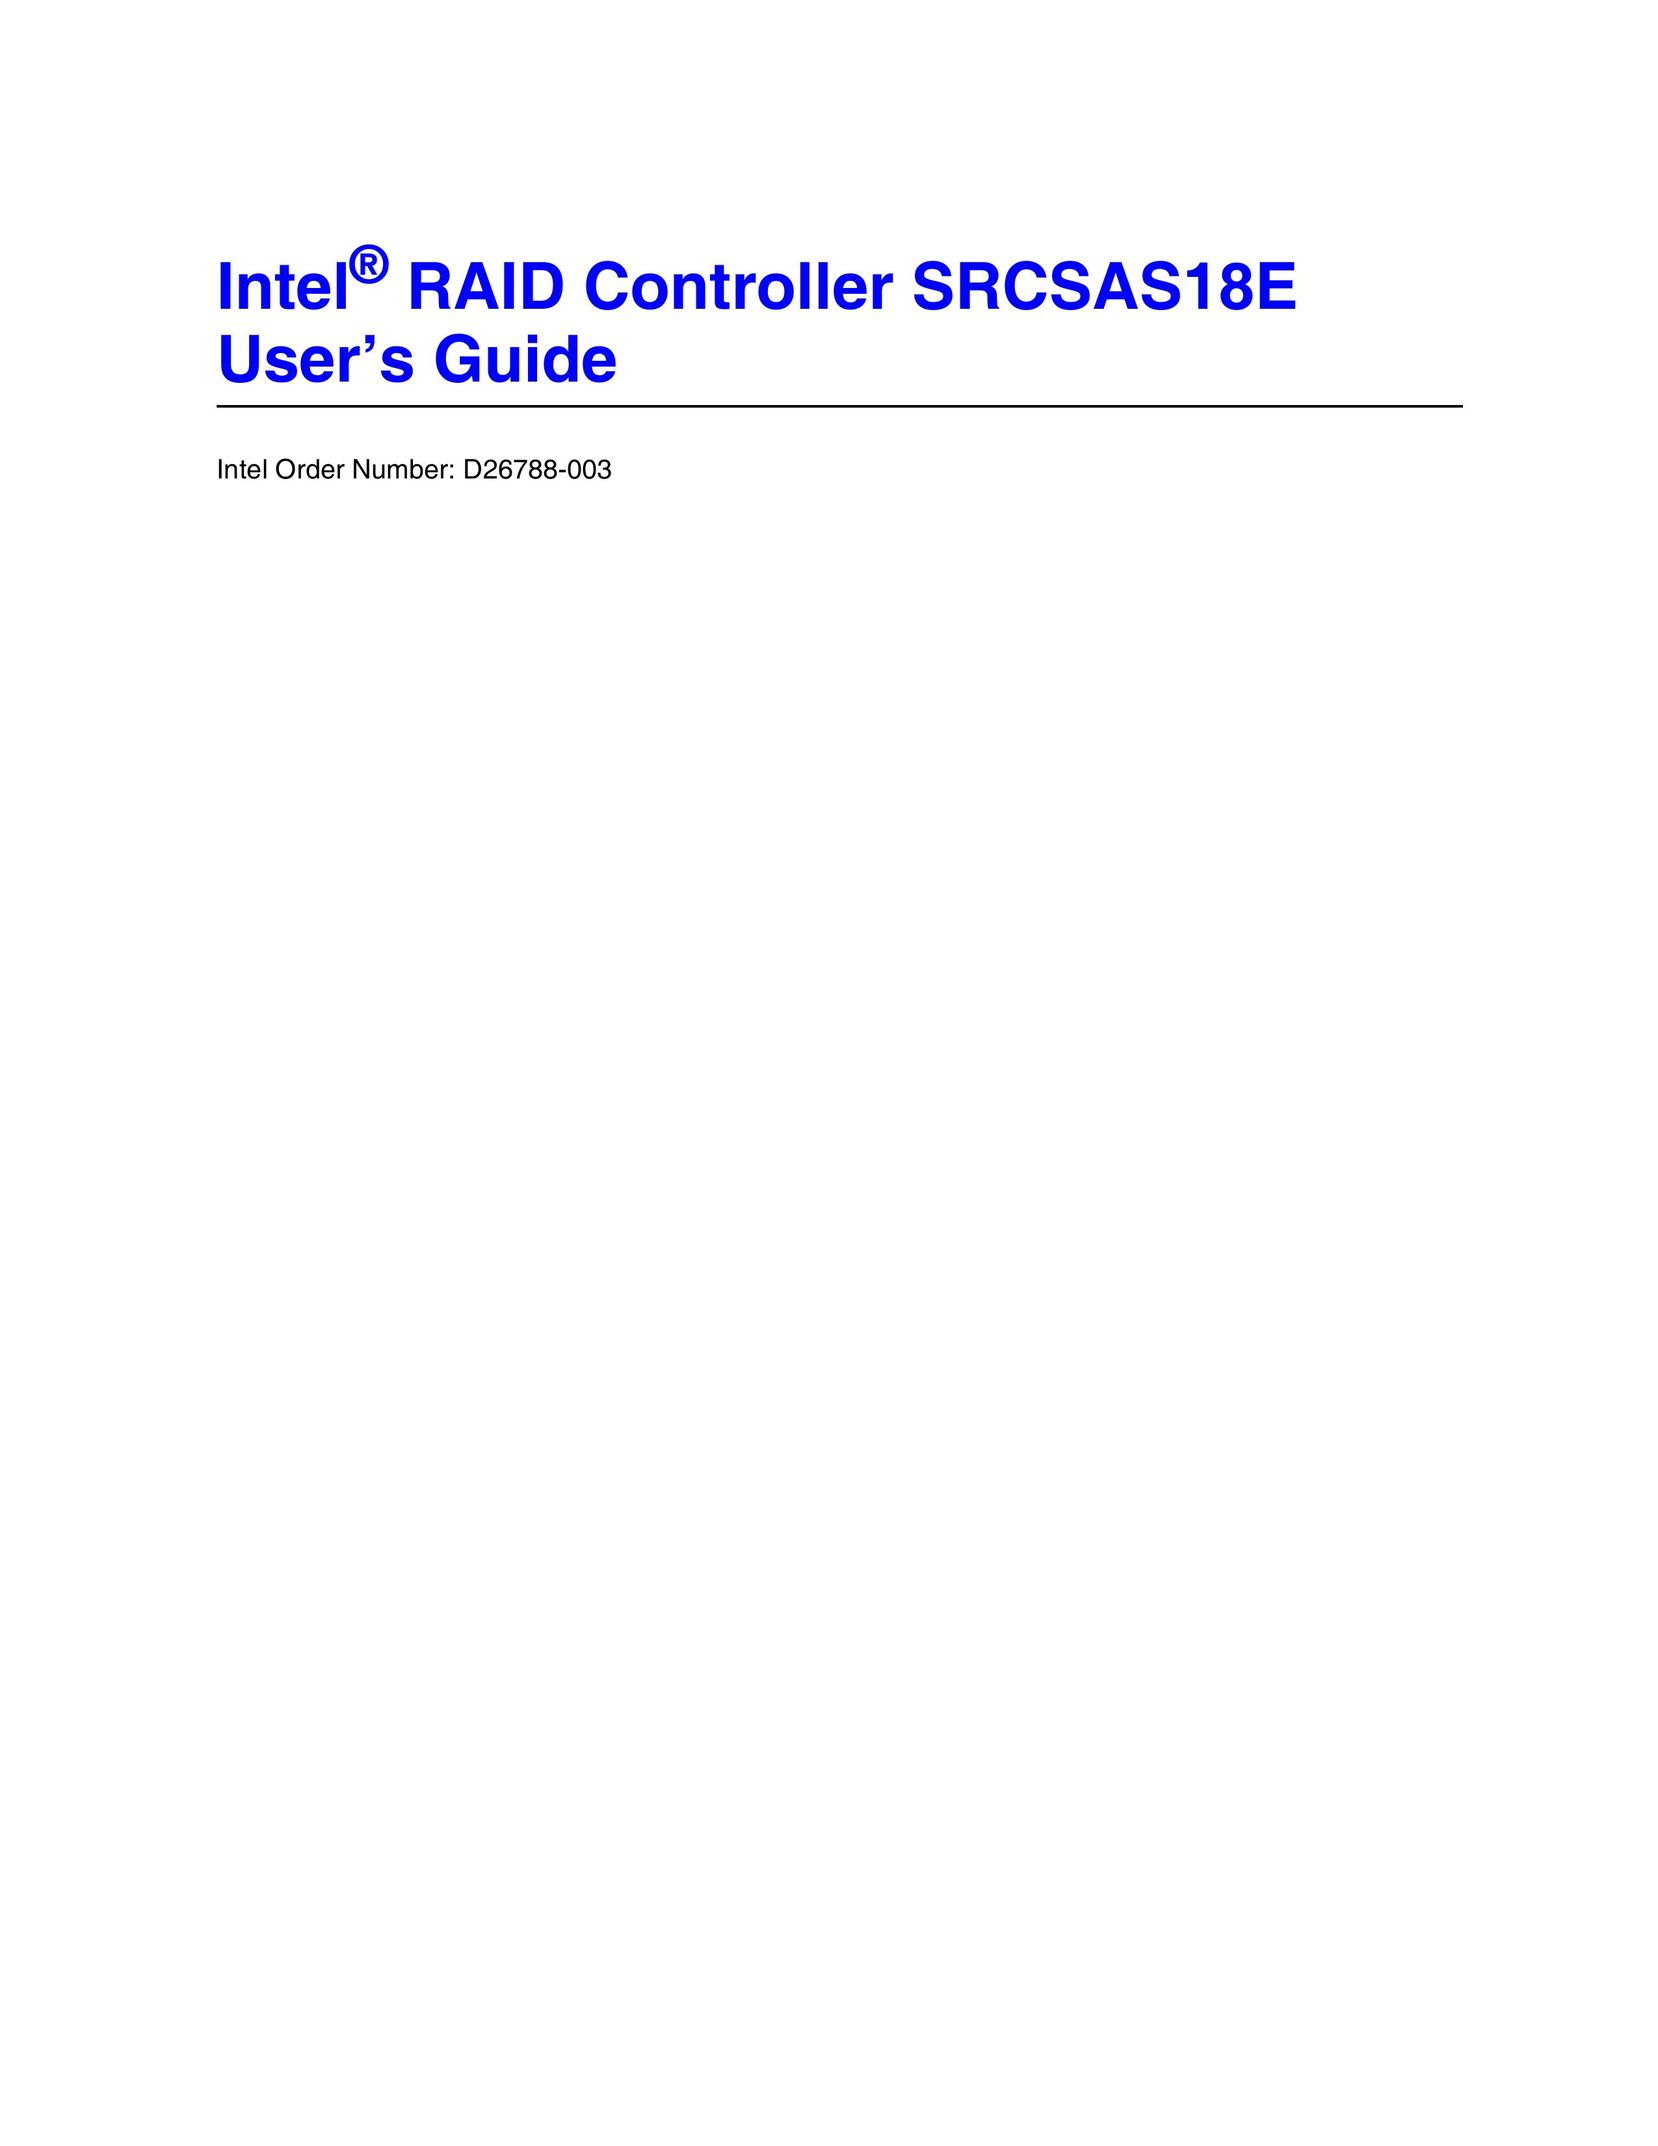 Intel SRCSAS18E Model Vehicle User Manual